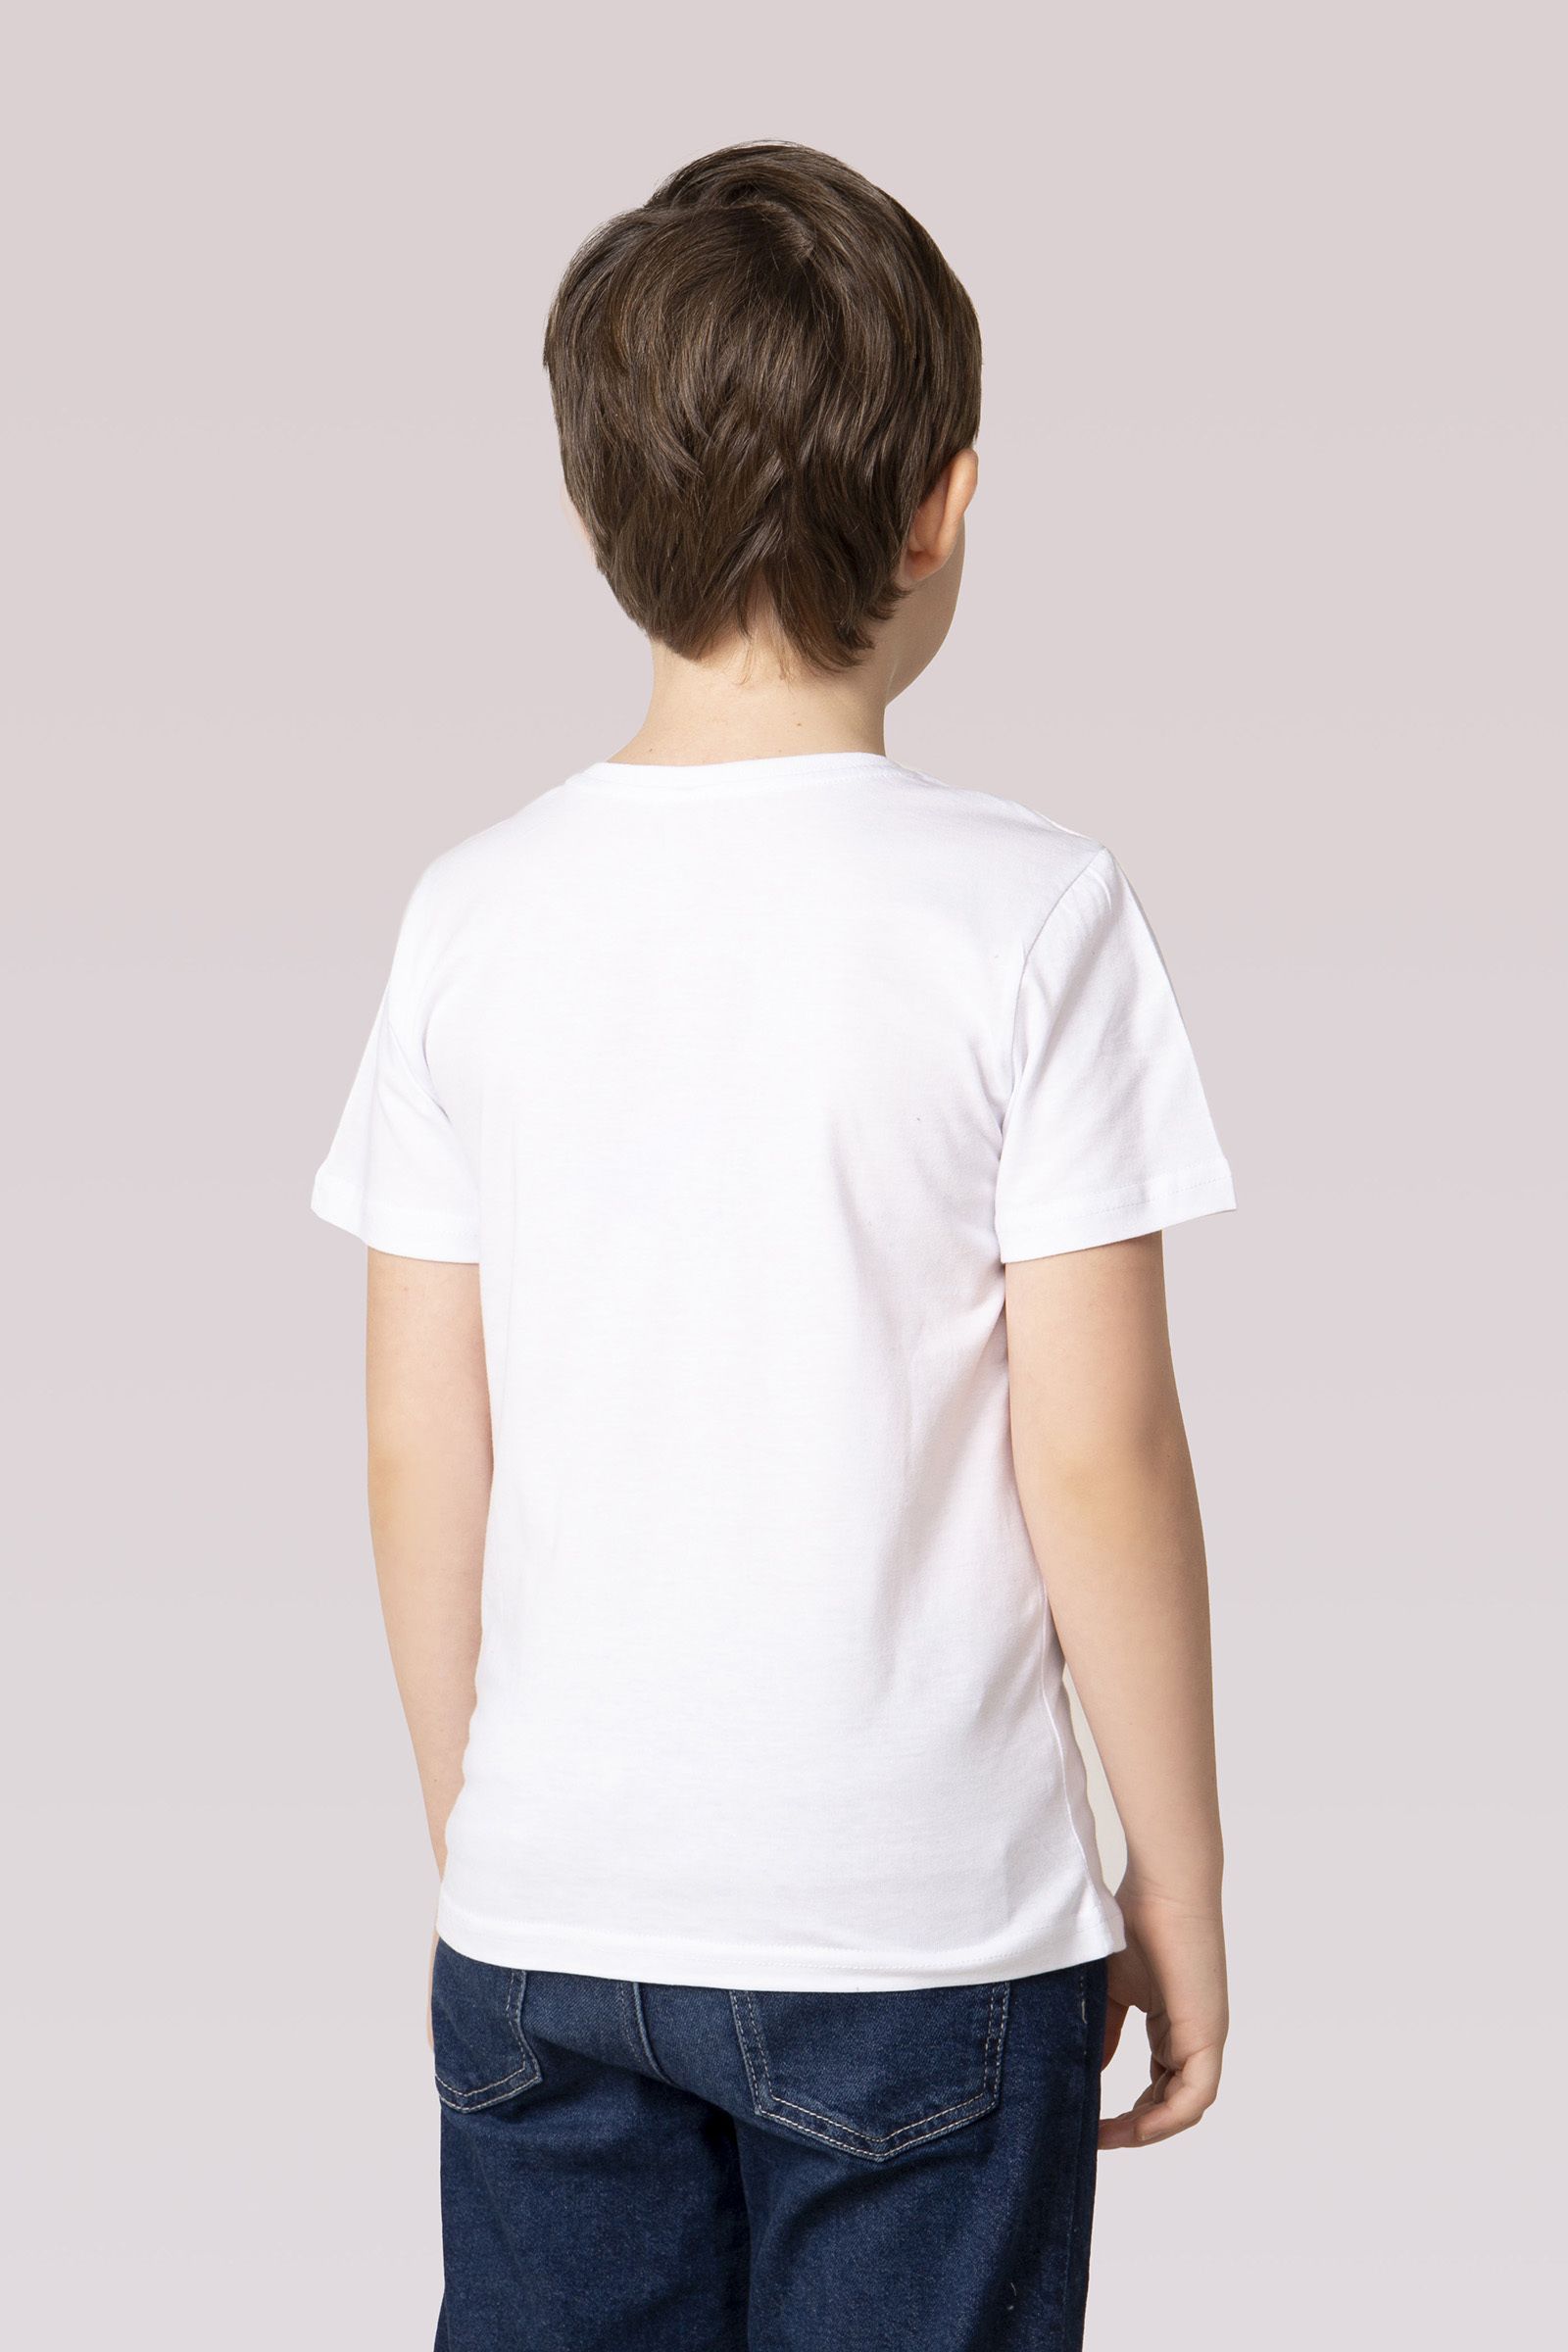 Джемпер-ДЖ02-3771 оптом от производителя детской одежды 'Алёна'